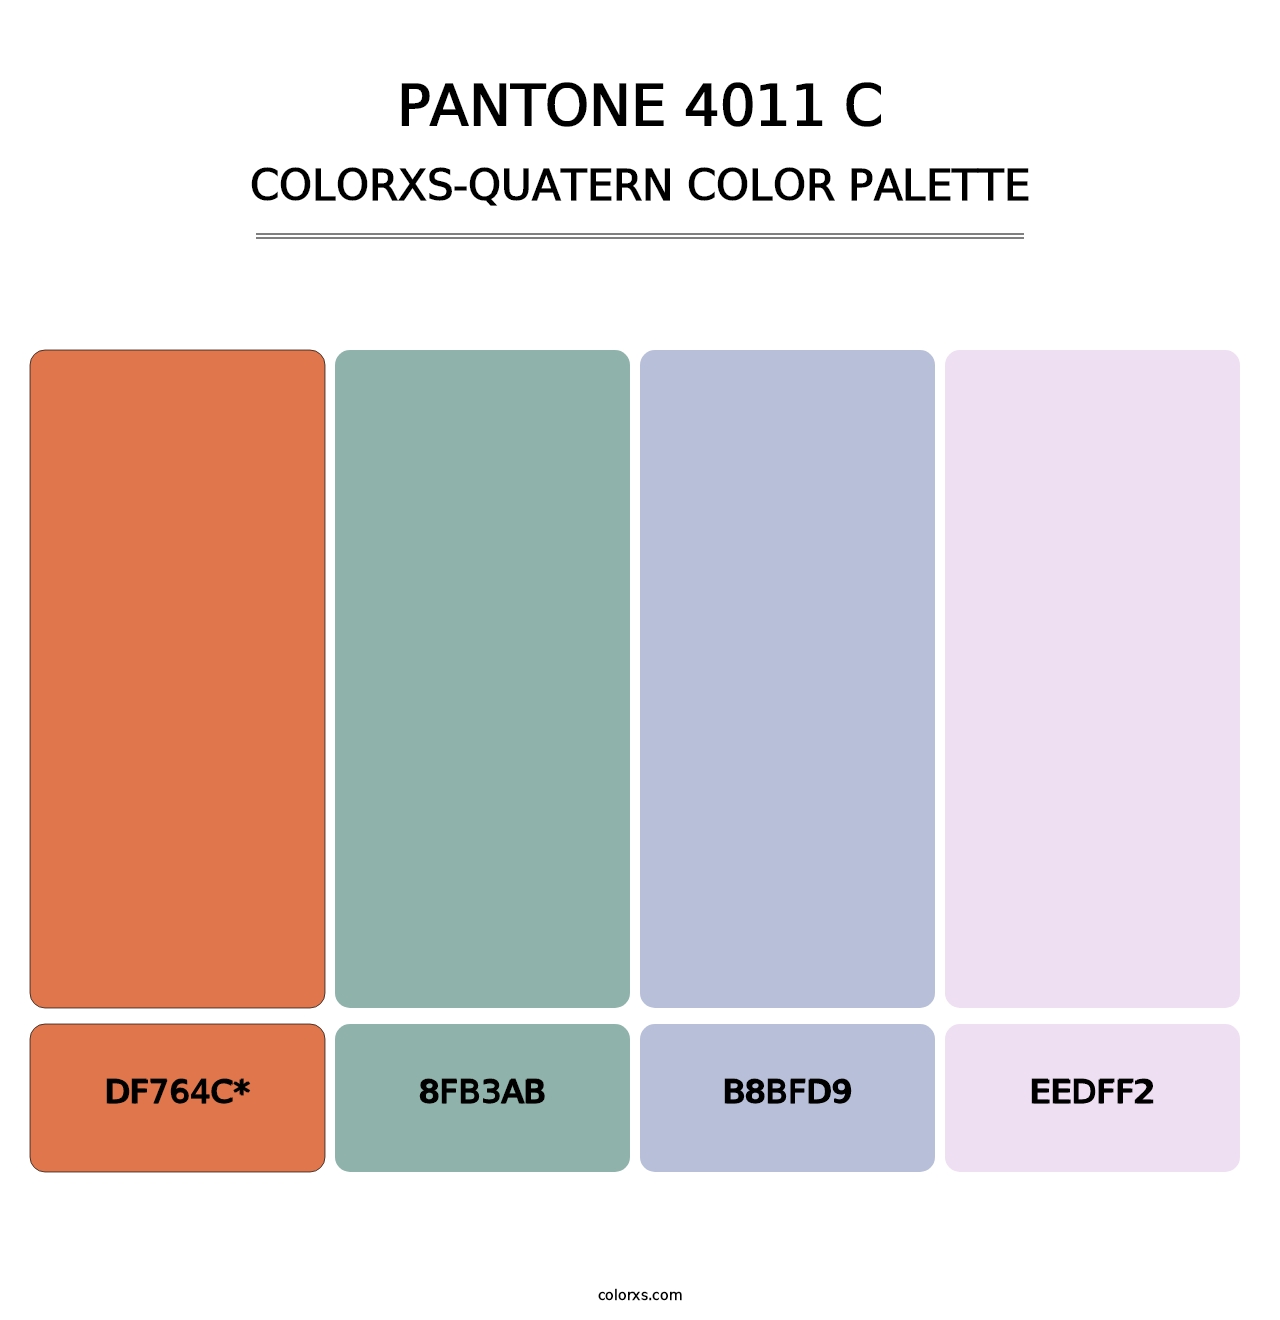 PANTONE 4011 C - Colorxs Quatern Palette